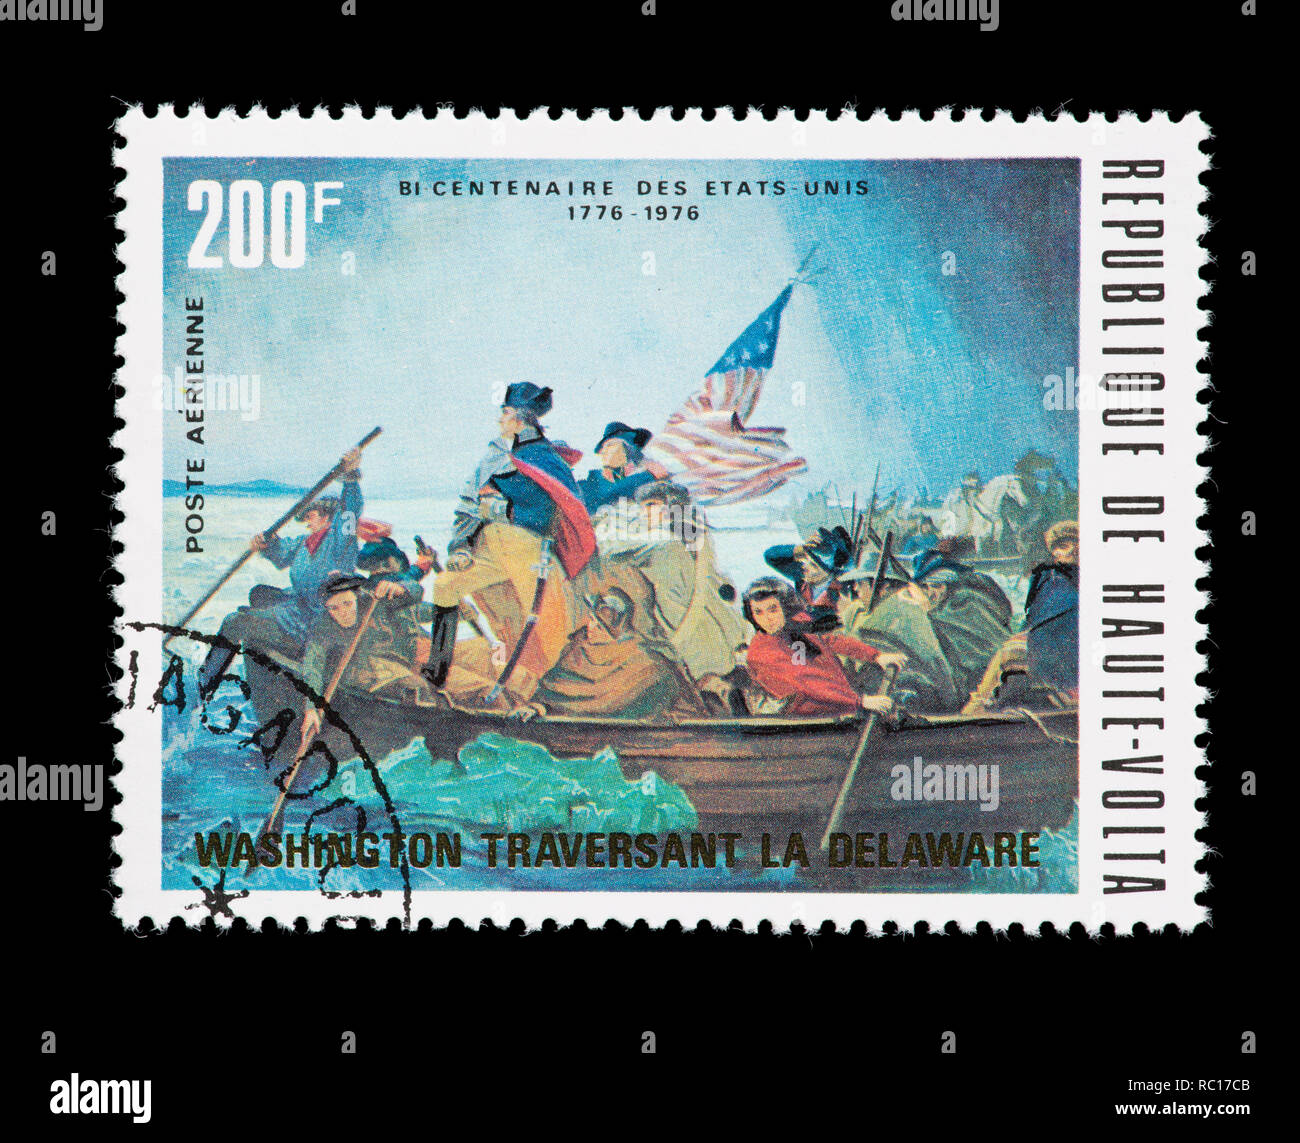 Briefmarke von Obervolta (Burkina Faso), Washington der Delaware River Crossing, United States Bicentennial. Stockfoto